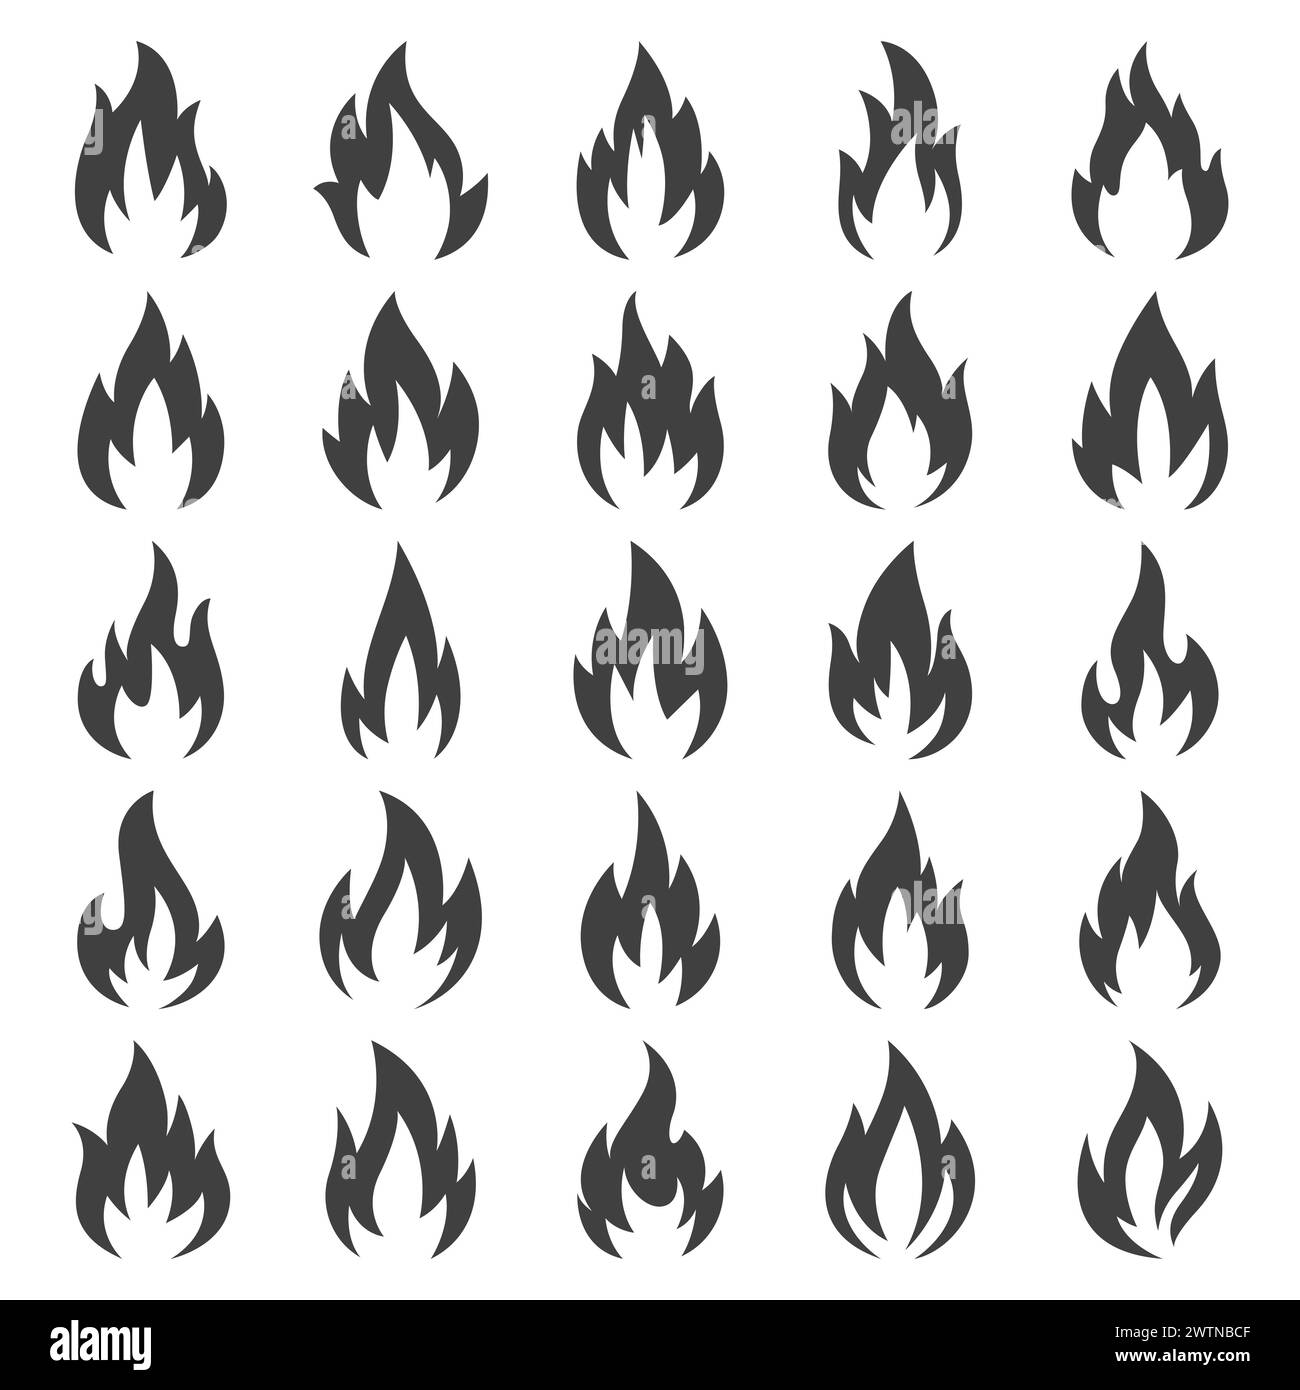 Vektor Feuer Flamme Symbolsatz, Isoliert. Lagerfeuer-Form-Schild, Lagerfeuer-Design-Vorlage für Outdoor, Abenteuer, Naturkonzept. Schwarz-Weiße Farbflamme Stock Vektor